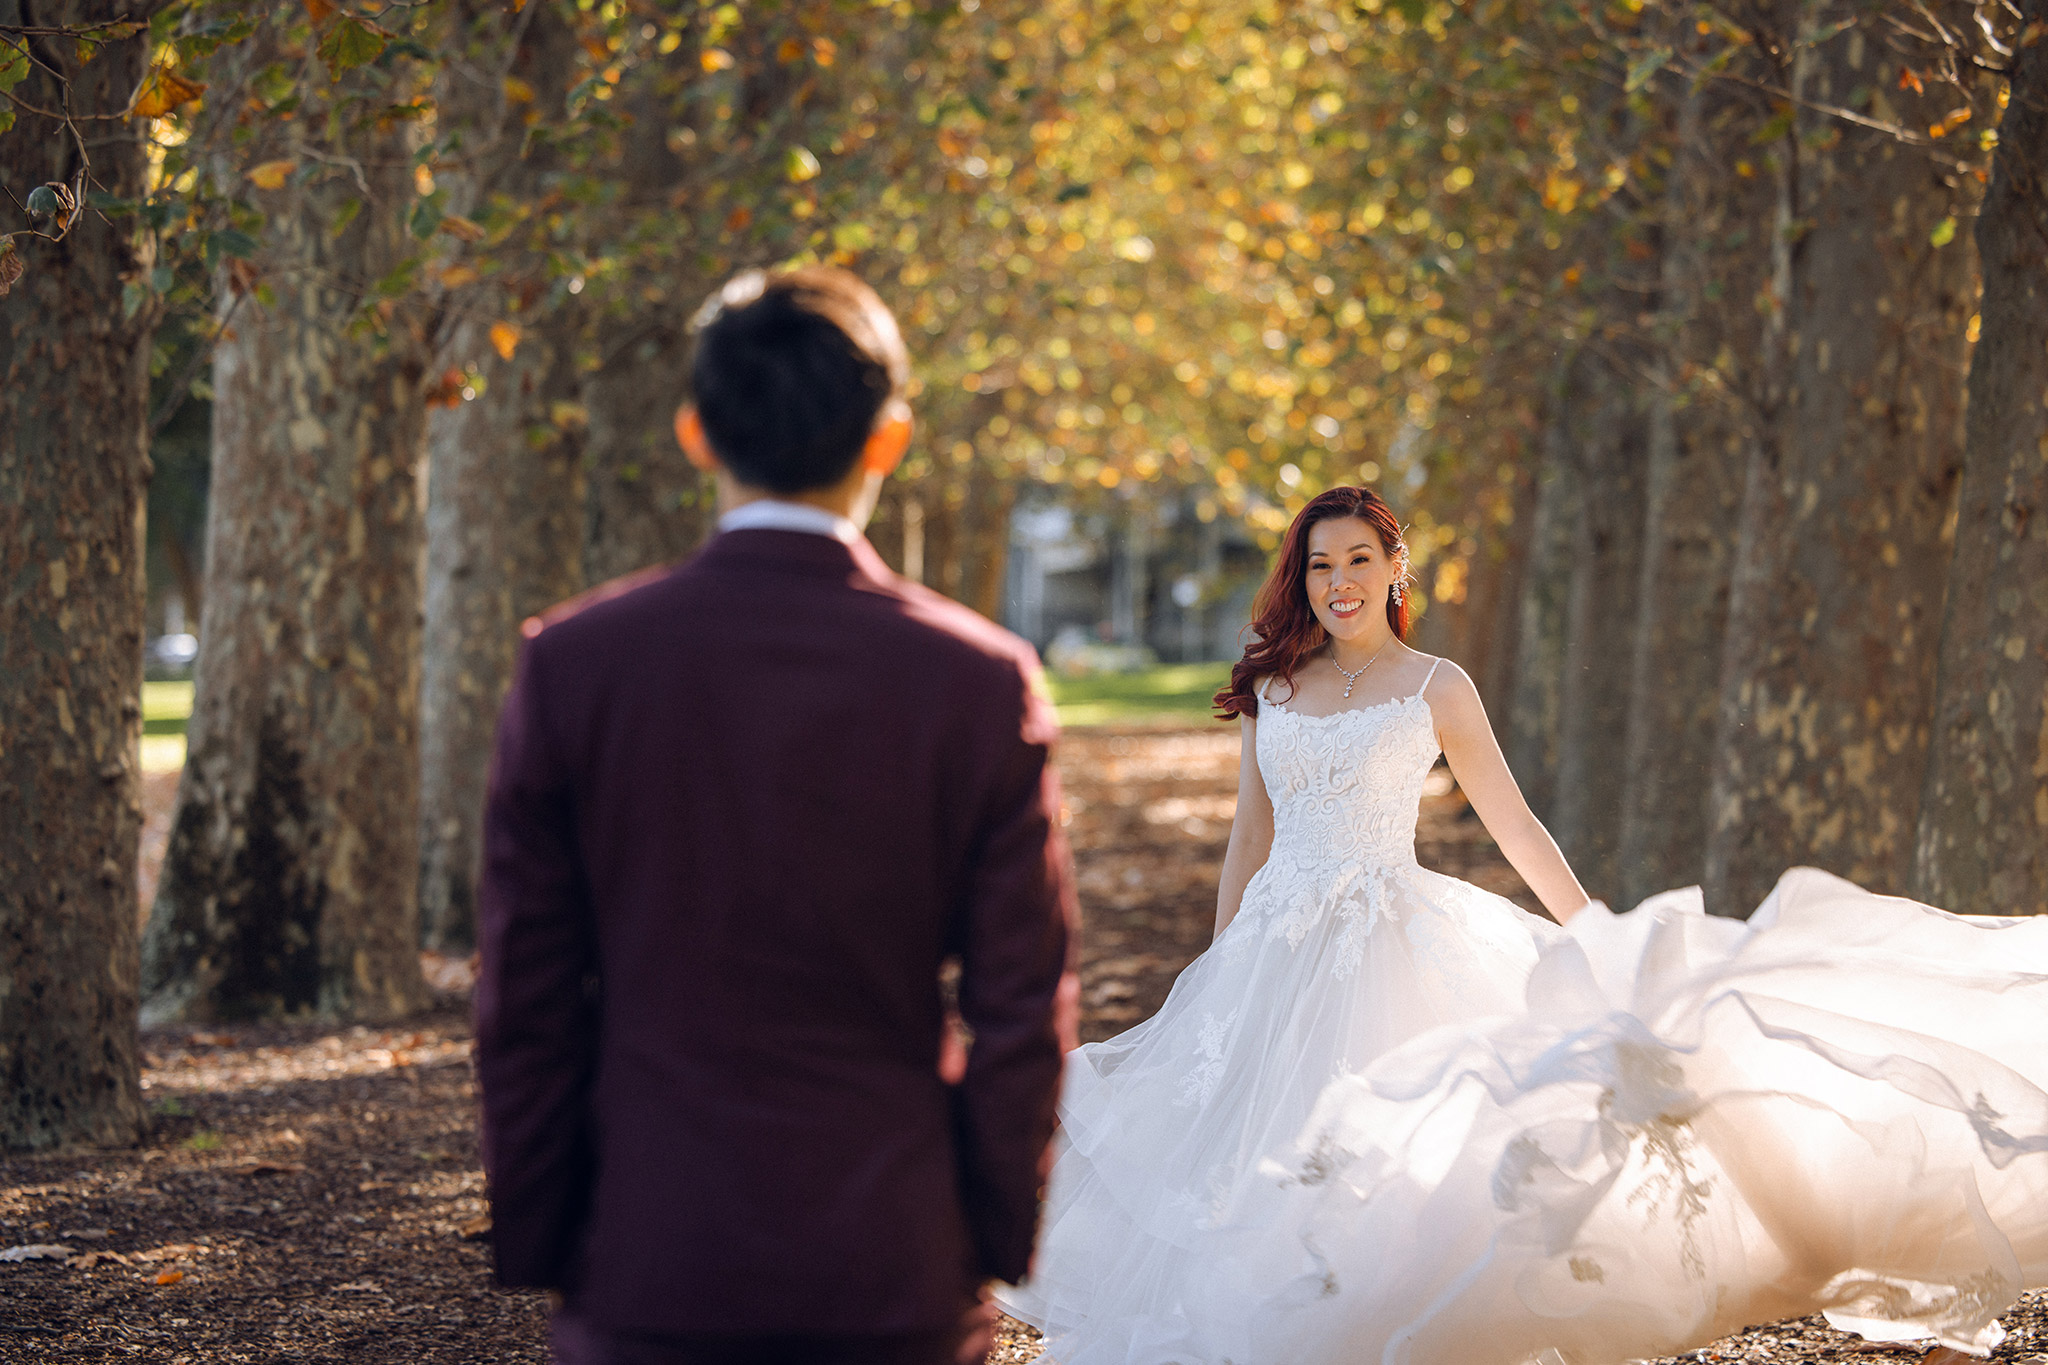 Melbourne Pre-Wedding Photoshoot at Alpaca Farm, Carlton Gardens & Brighton Beach by Freddie on OneThreeOneFour 14